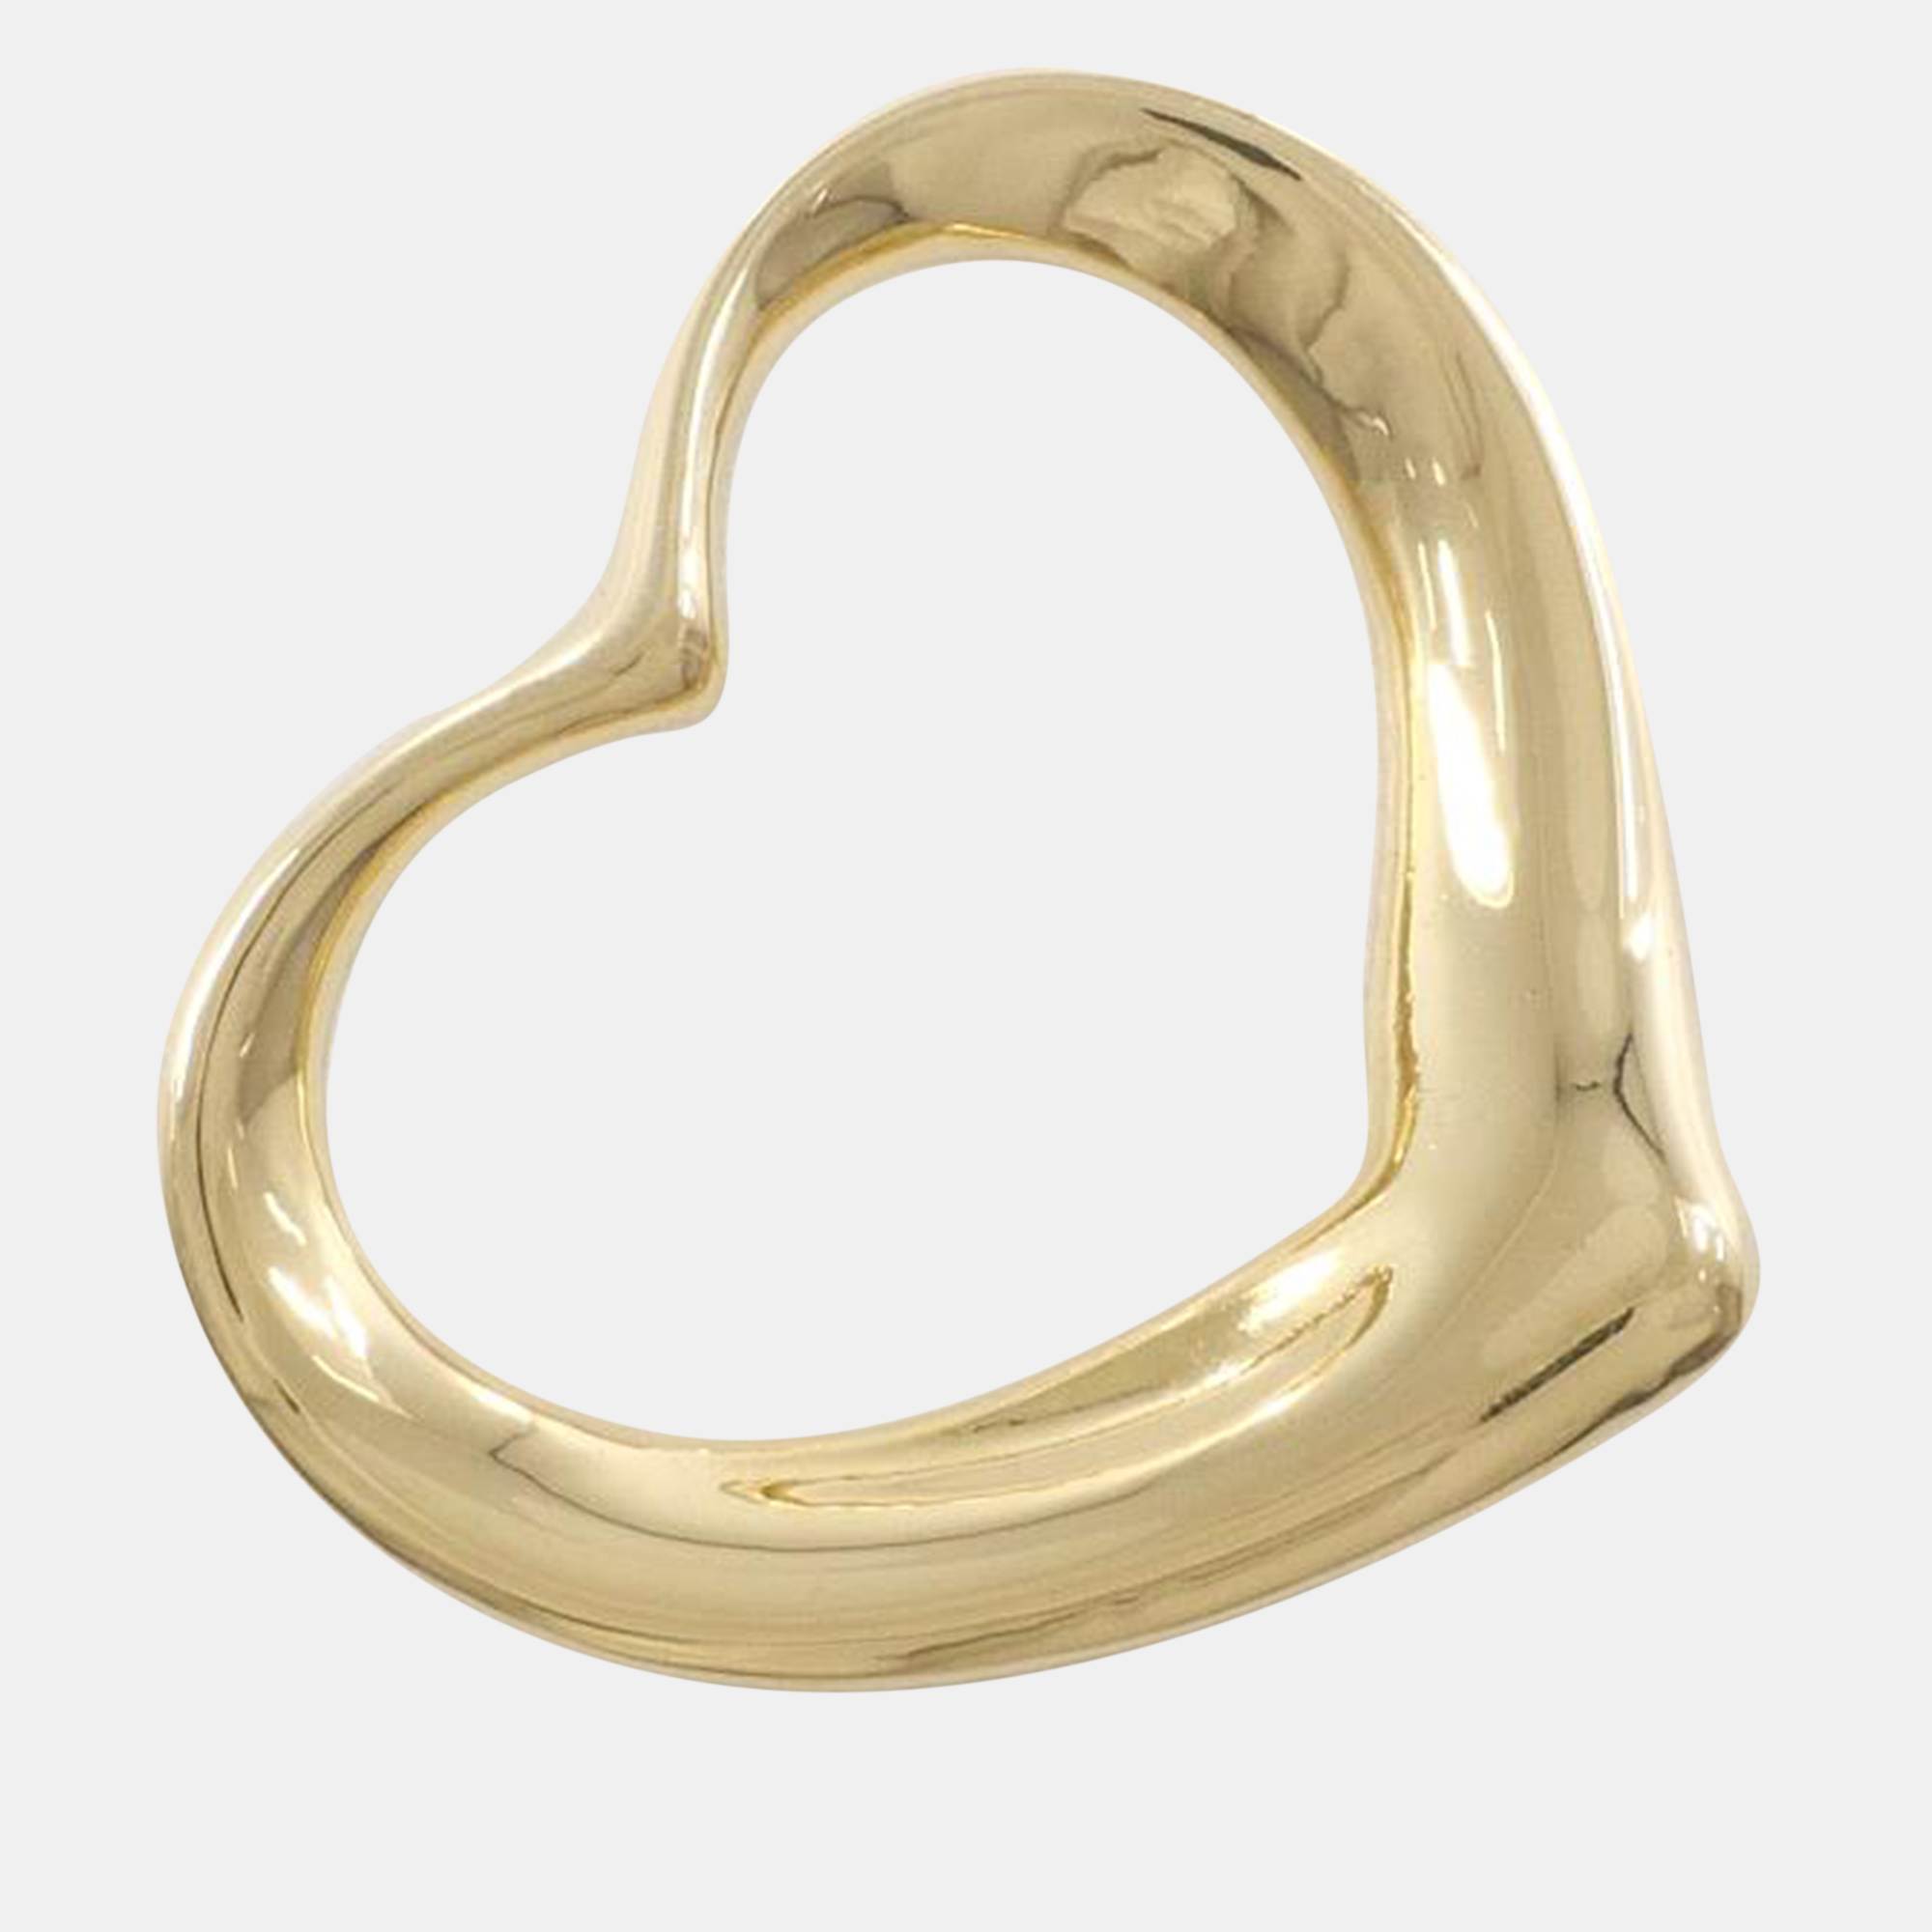 Tiffany & co gold metal 18k open heart pendant